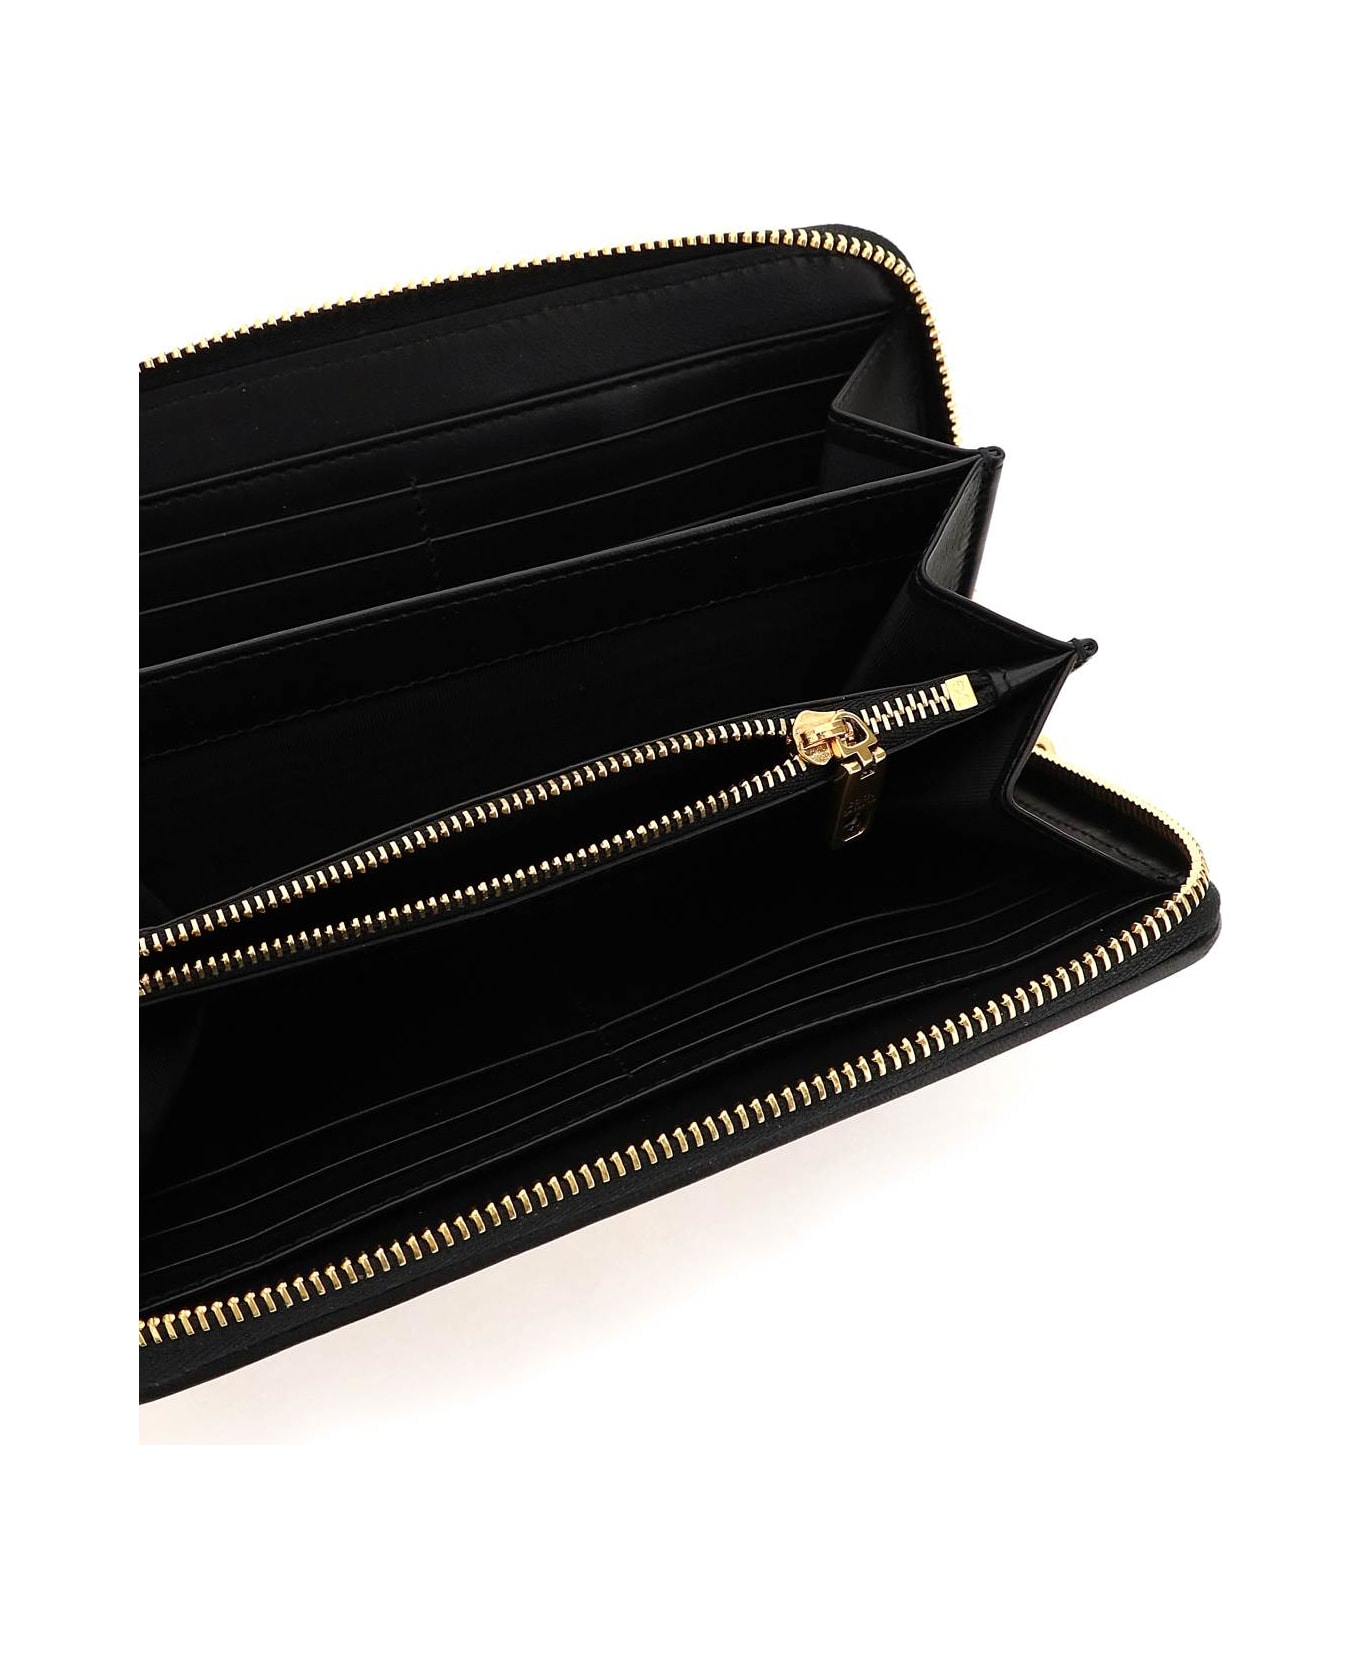 Dolce & Gabbana Devotion Zip-around Wallet - Nero